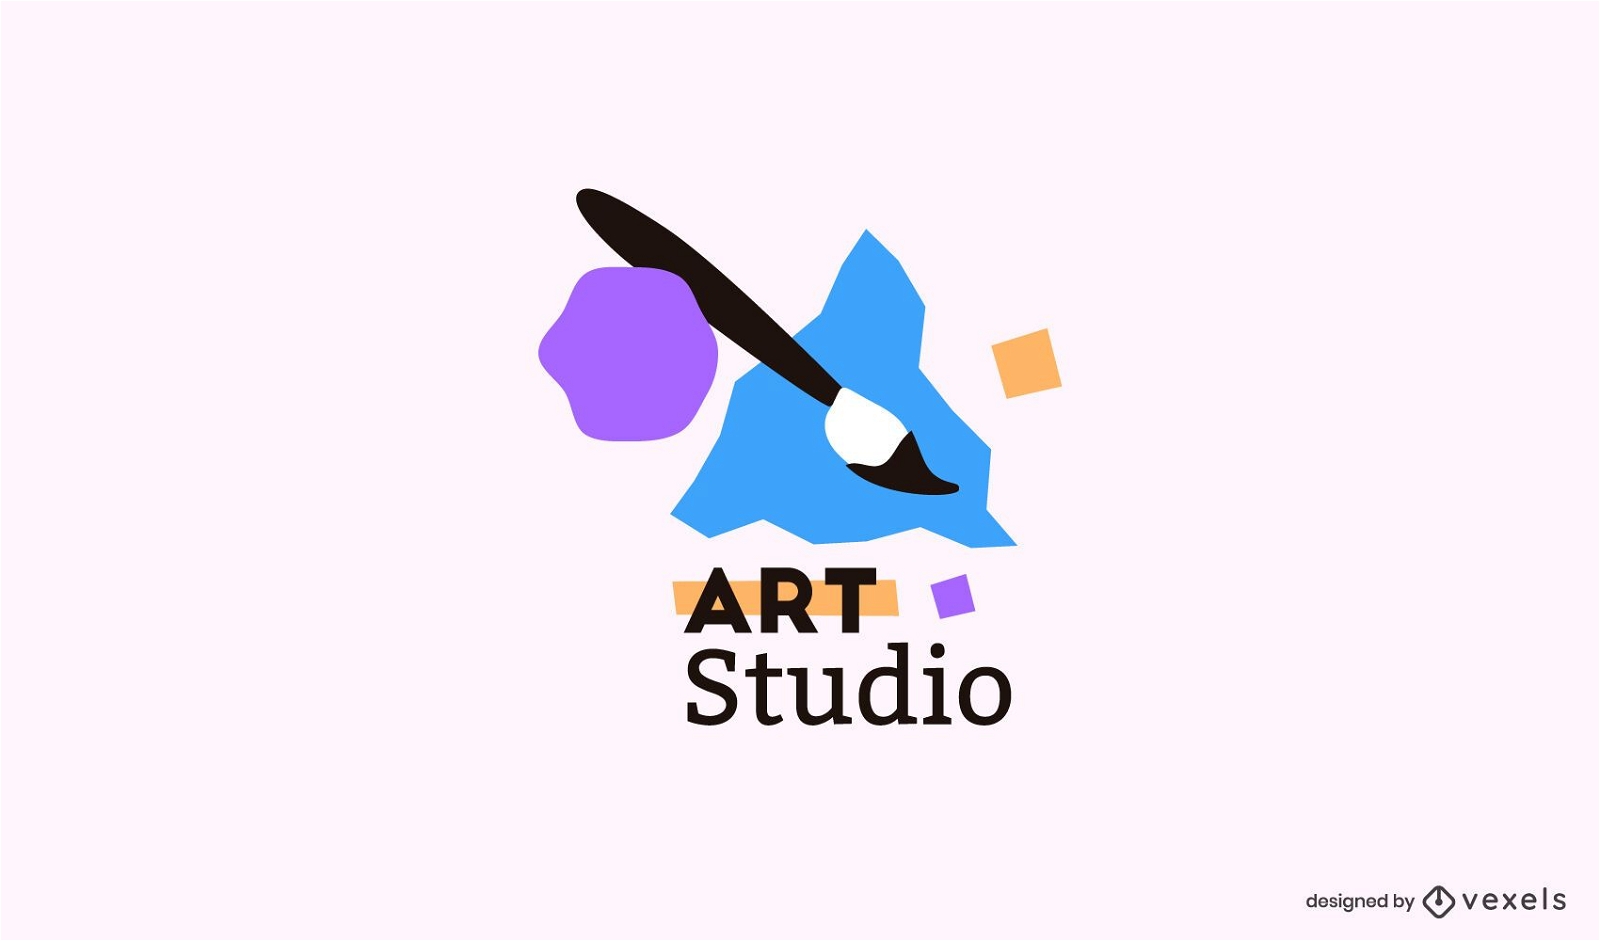 SQUAD Art Studio